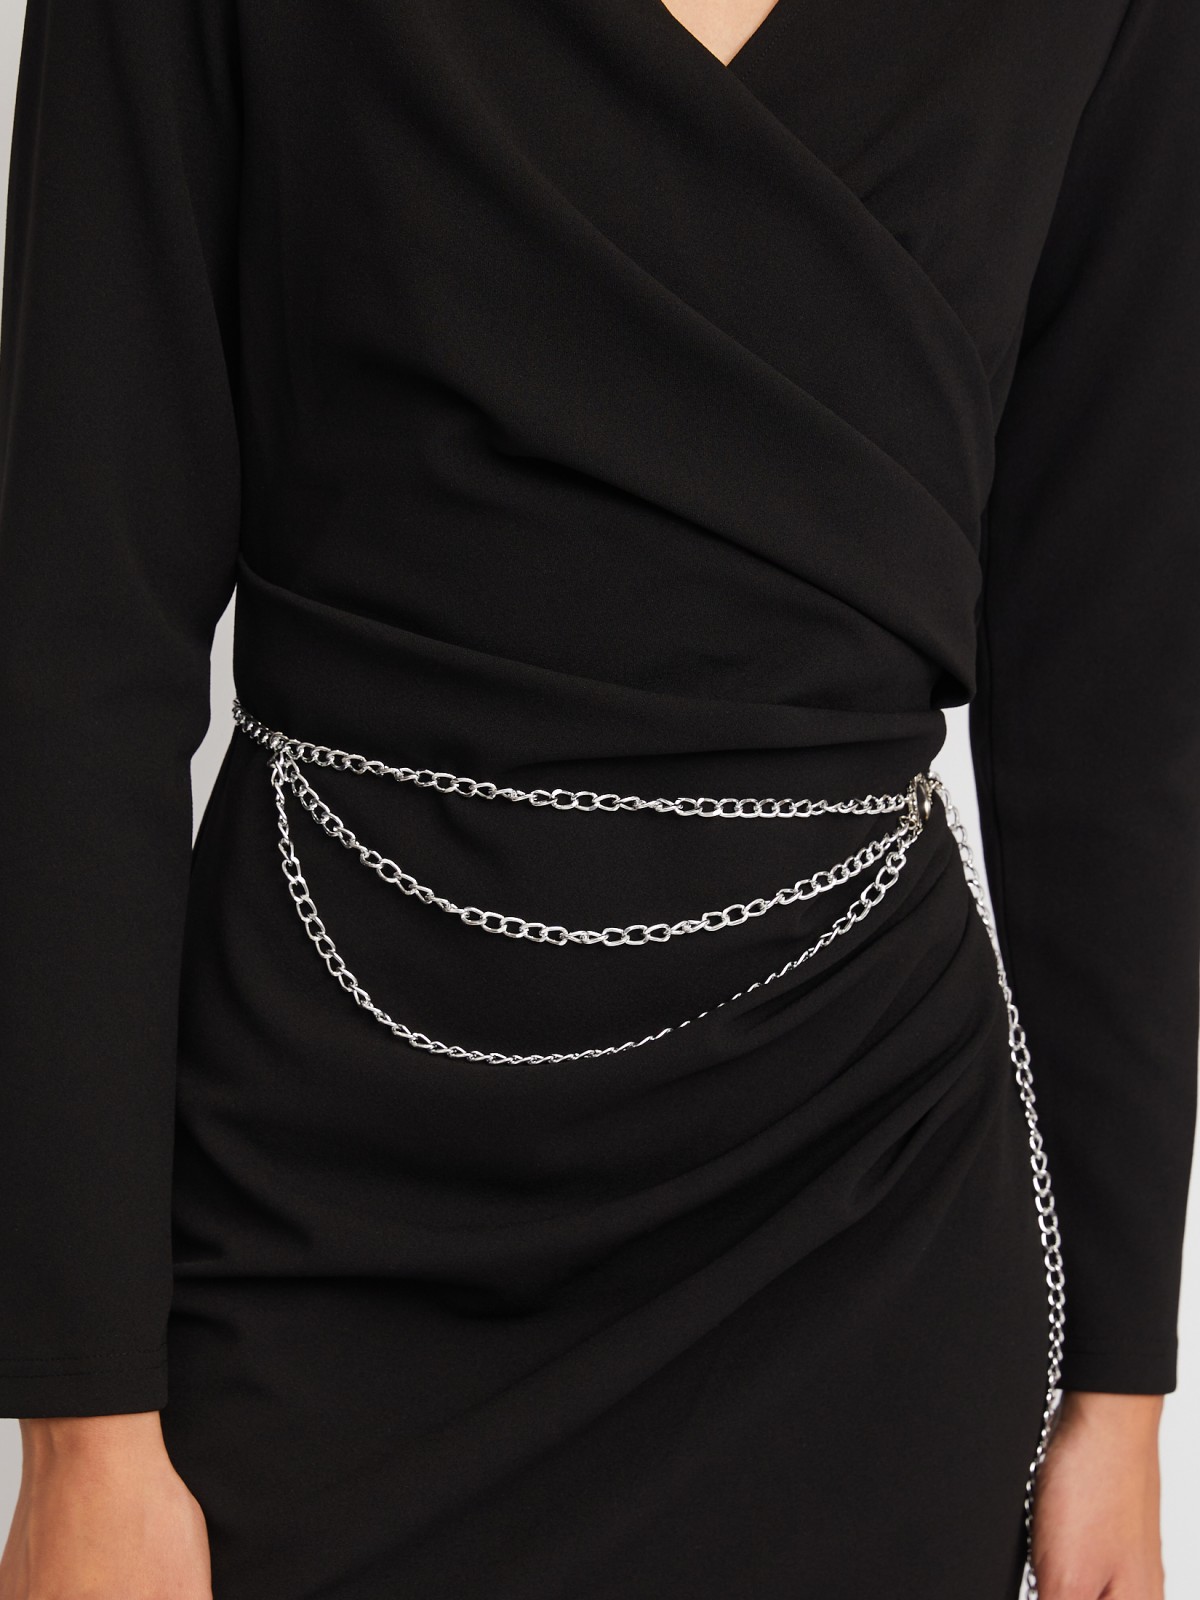 Платье с драпировкой, вырезом на запах и поясом-цепочкой zolla 024118135223, цвет черный, размер XS - фото 4